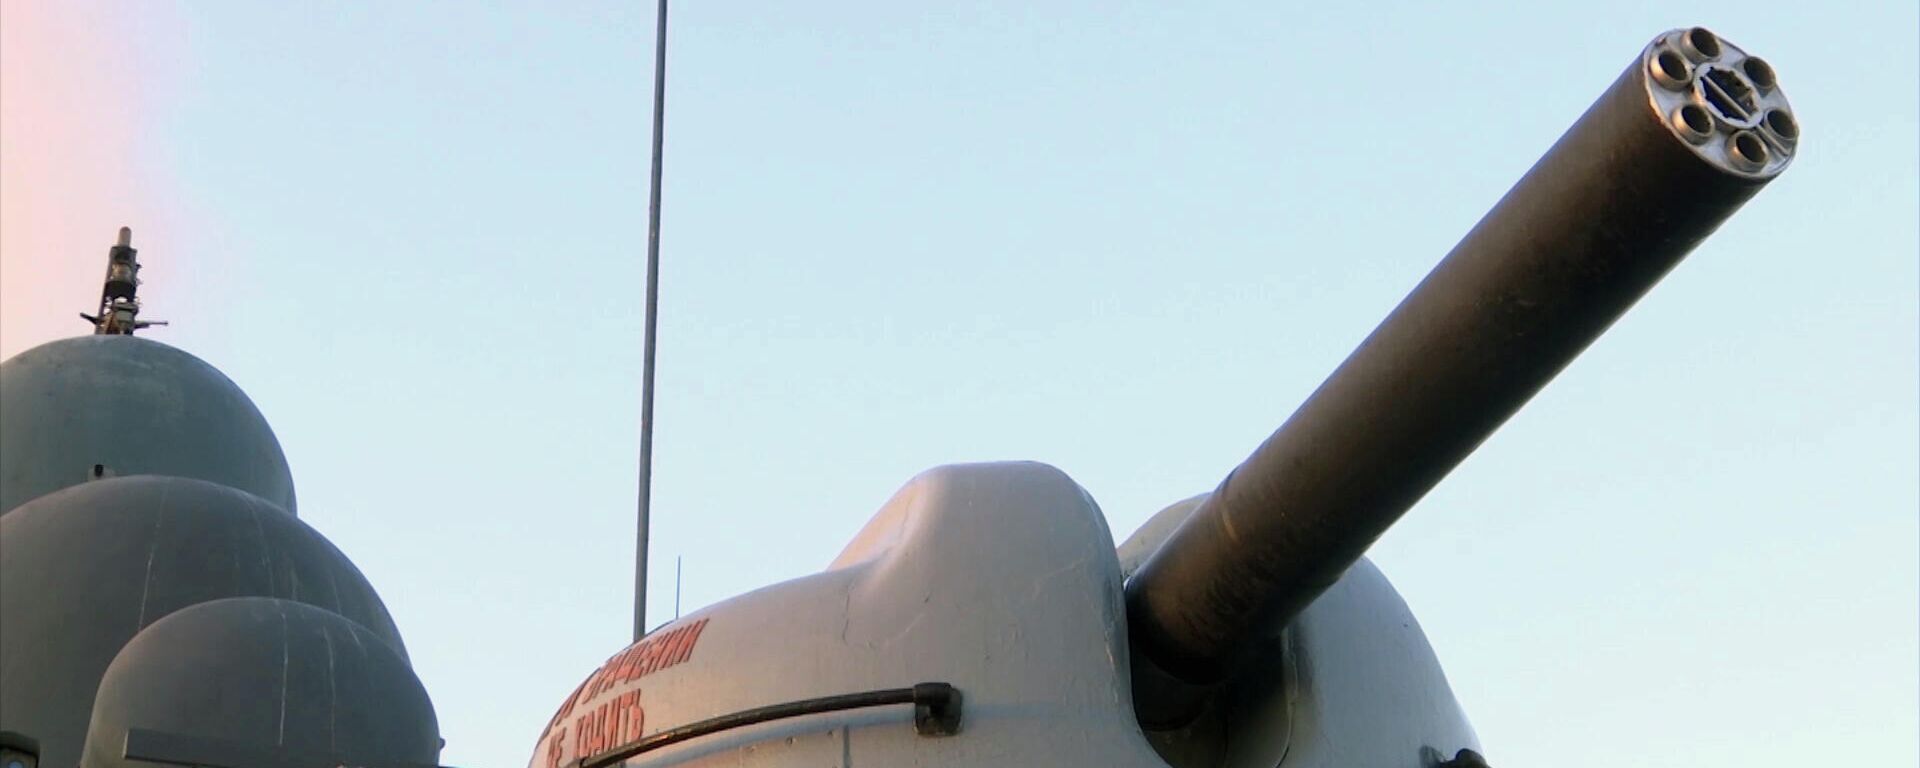 Шестиствольная зенитная автоматическая пушка сторожевого корабля Дагестан Каспийской флотилии - Sputnik Латвия, 1920, 28.12.2021